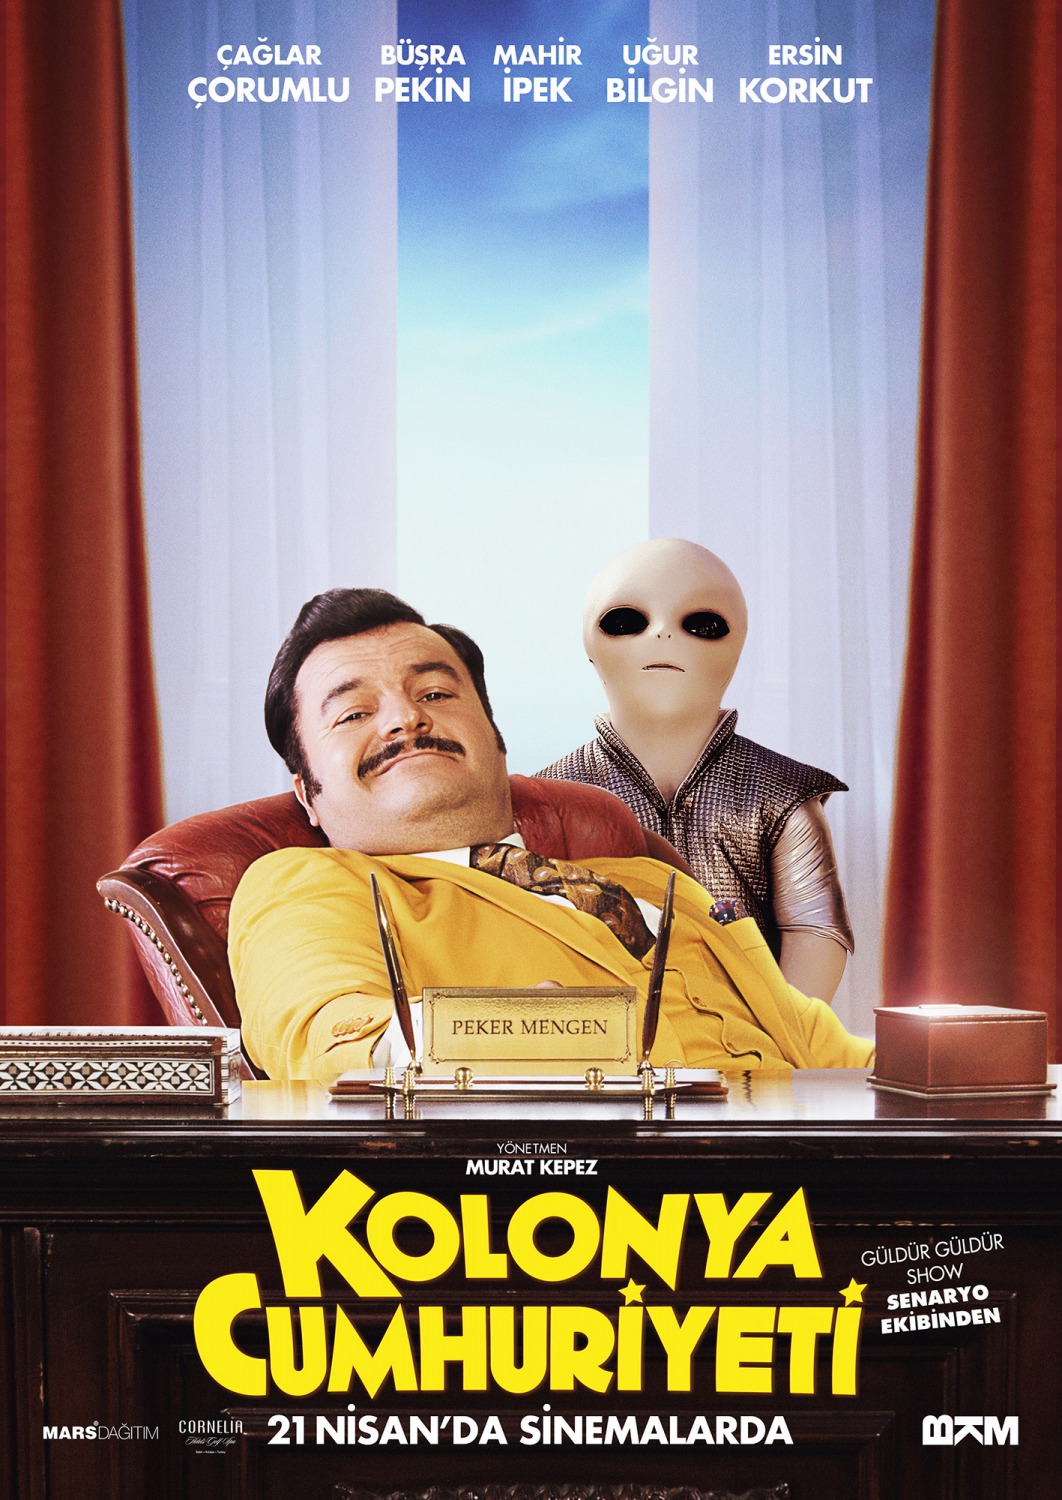 Extra Large Movie Poster Image for Kolonya Cumhuriyeti (#7 of 7)